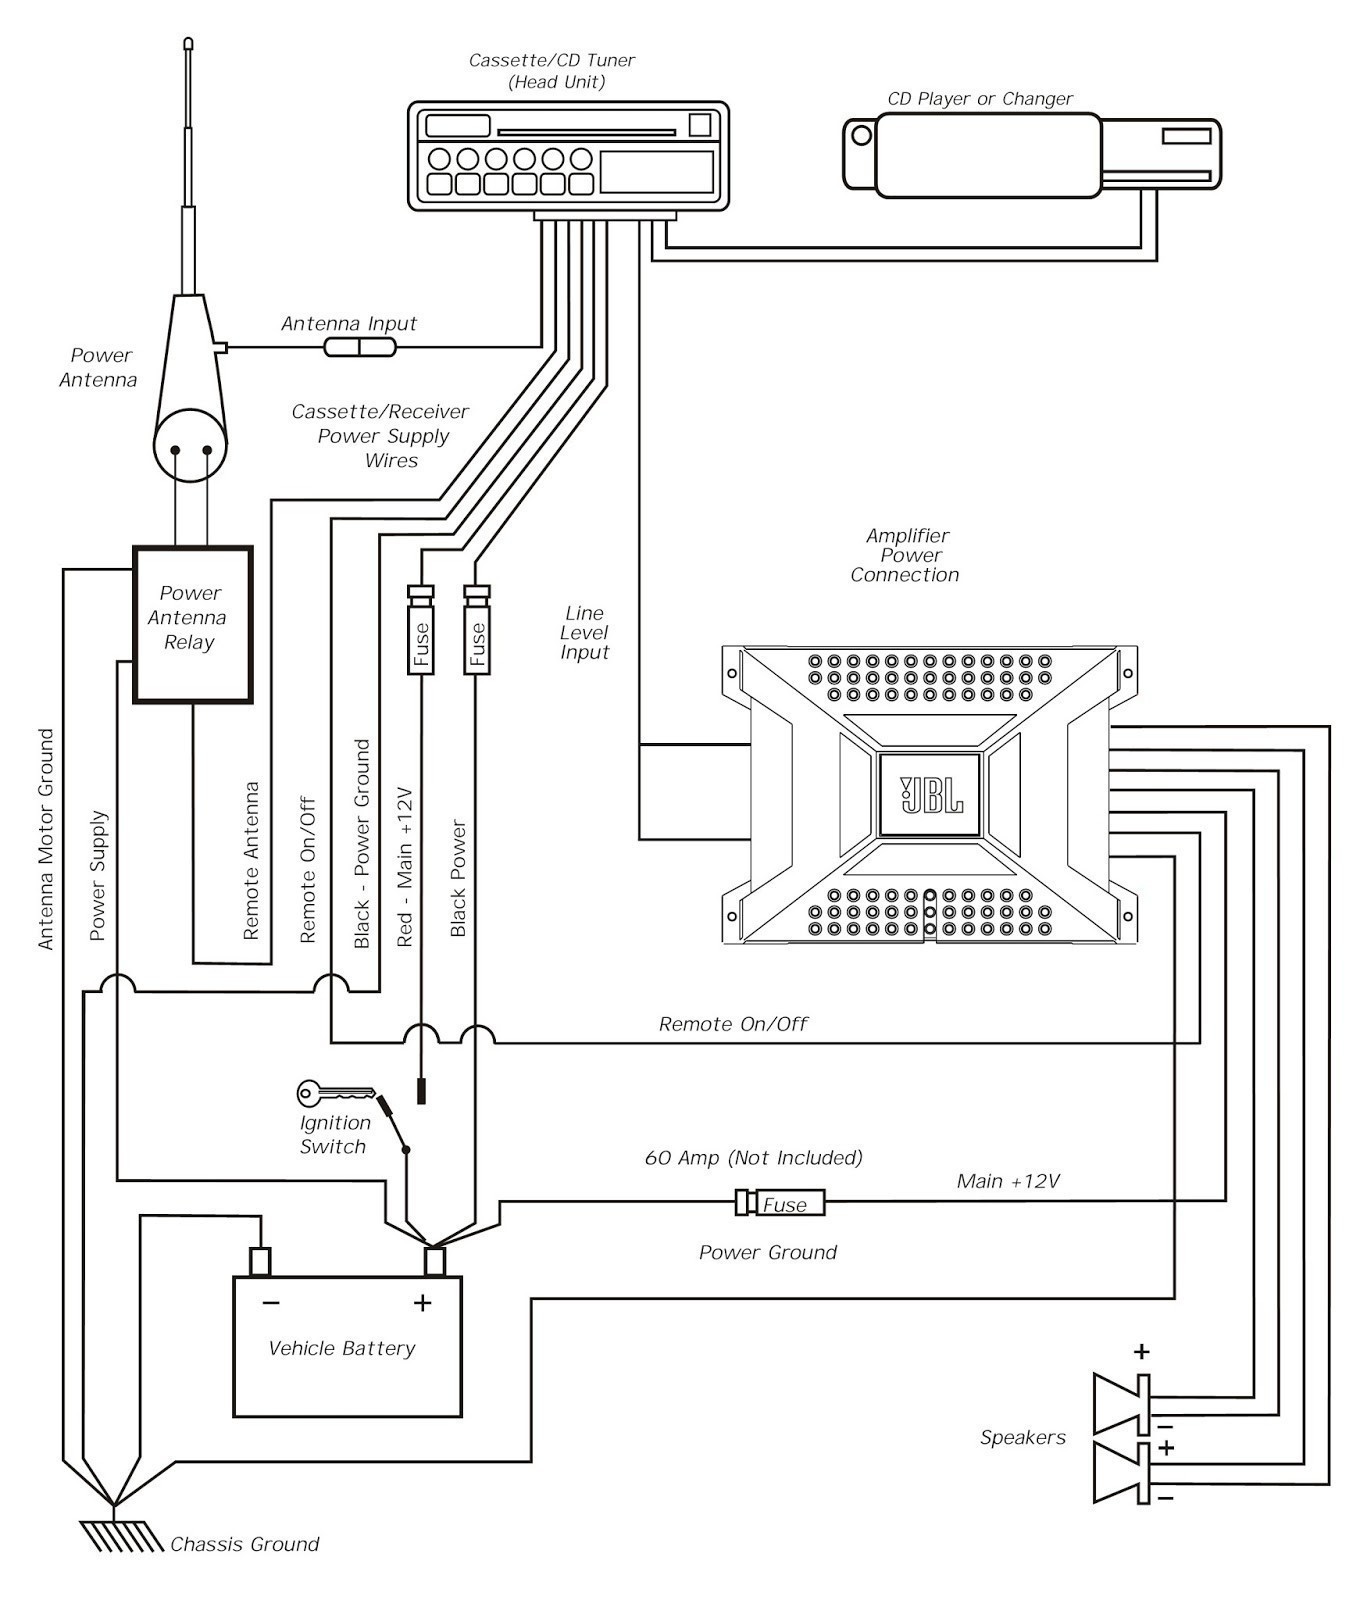 House Meter Wiring Diagram Best Wiring Diagram Electric Meter Valid Home Meter Wiring Diagram New